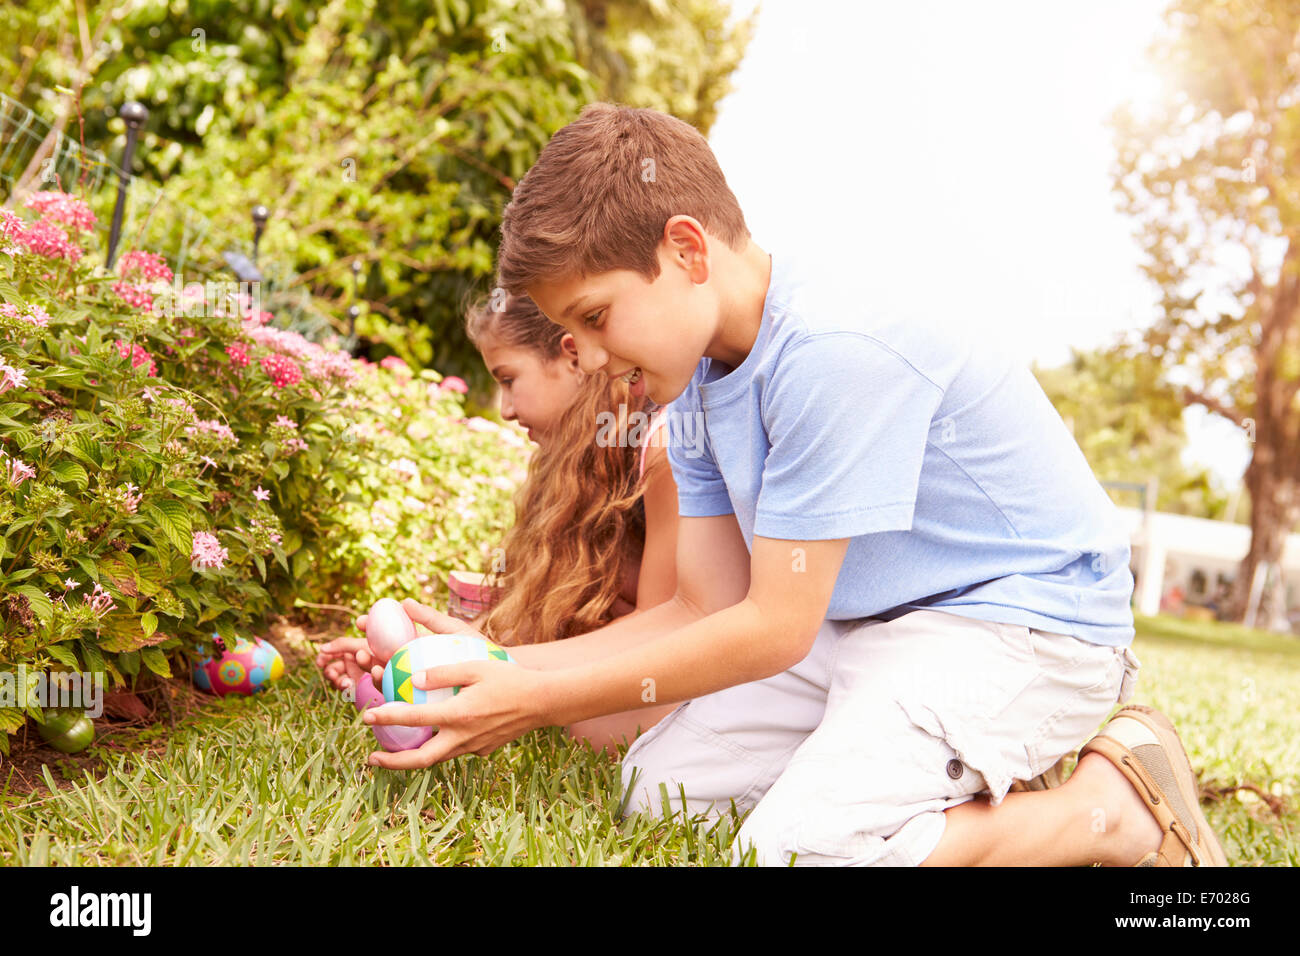 Two Children Having Easter Egg Hunt In Garden Stock Photo